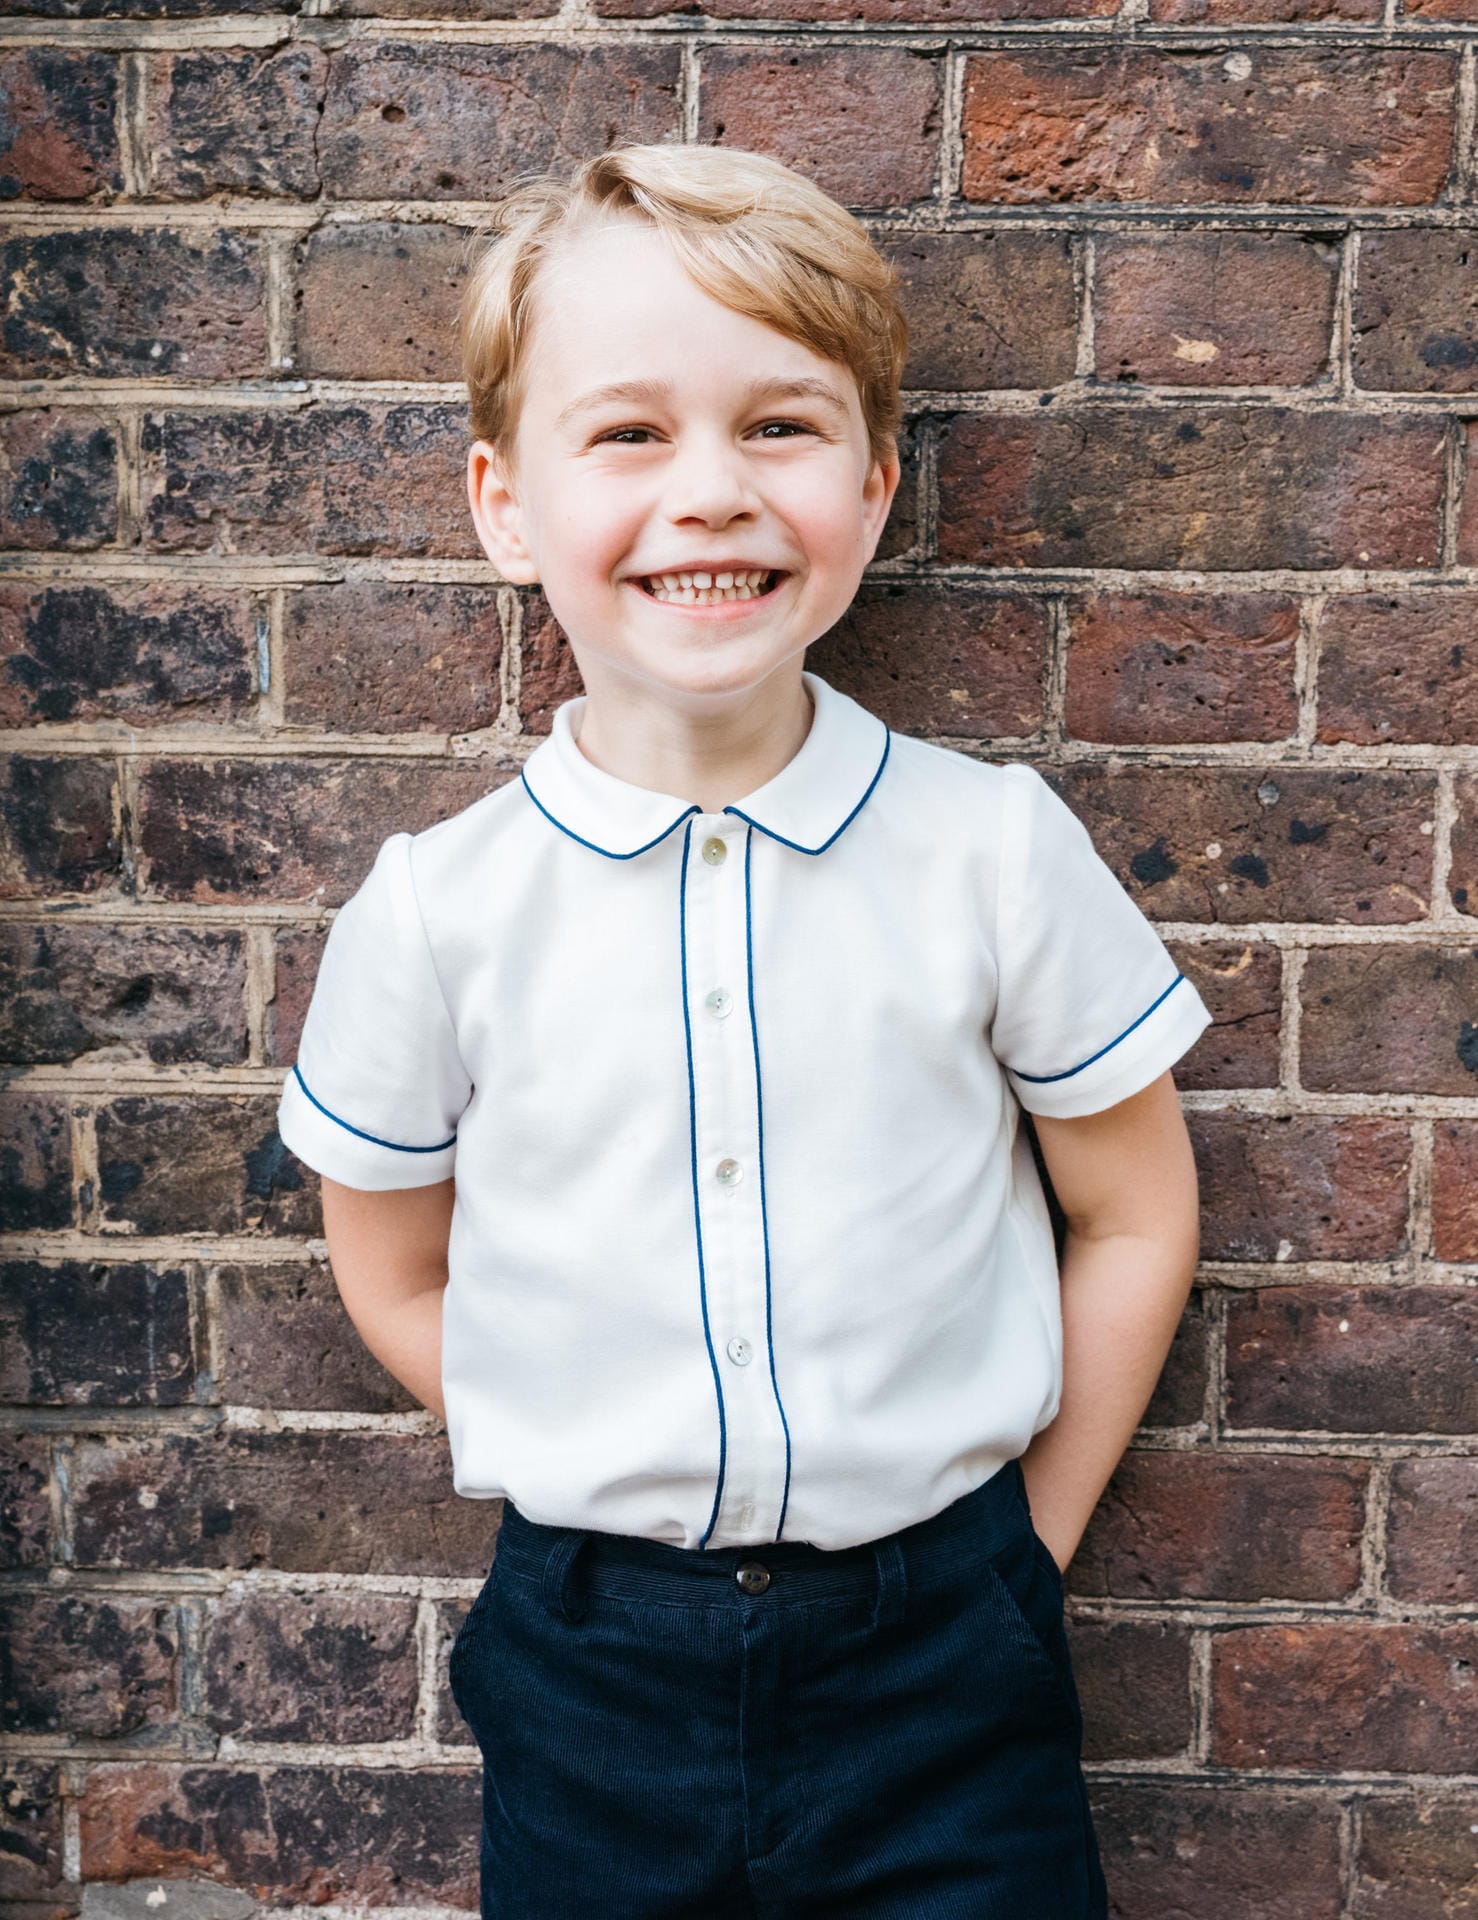 Rüber nach England: Prinz George ist das älteste Kind von Prinz William und Herzogin Kate. Der am 22. Juli 2013 geborene Junge steht hinter seinem Großvater Prinz Charles und seinem Vater an dritter Stelle der britischen Thronfolge.